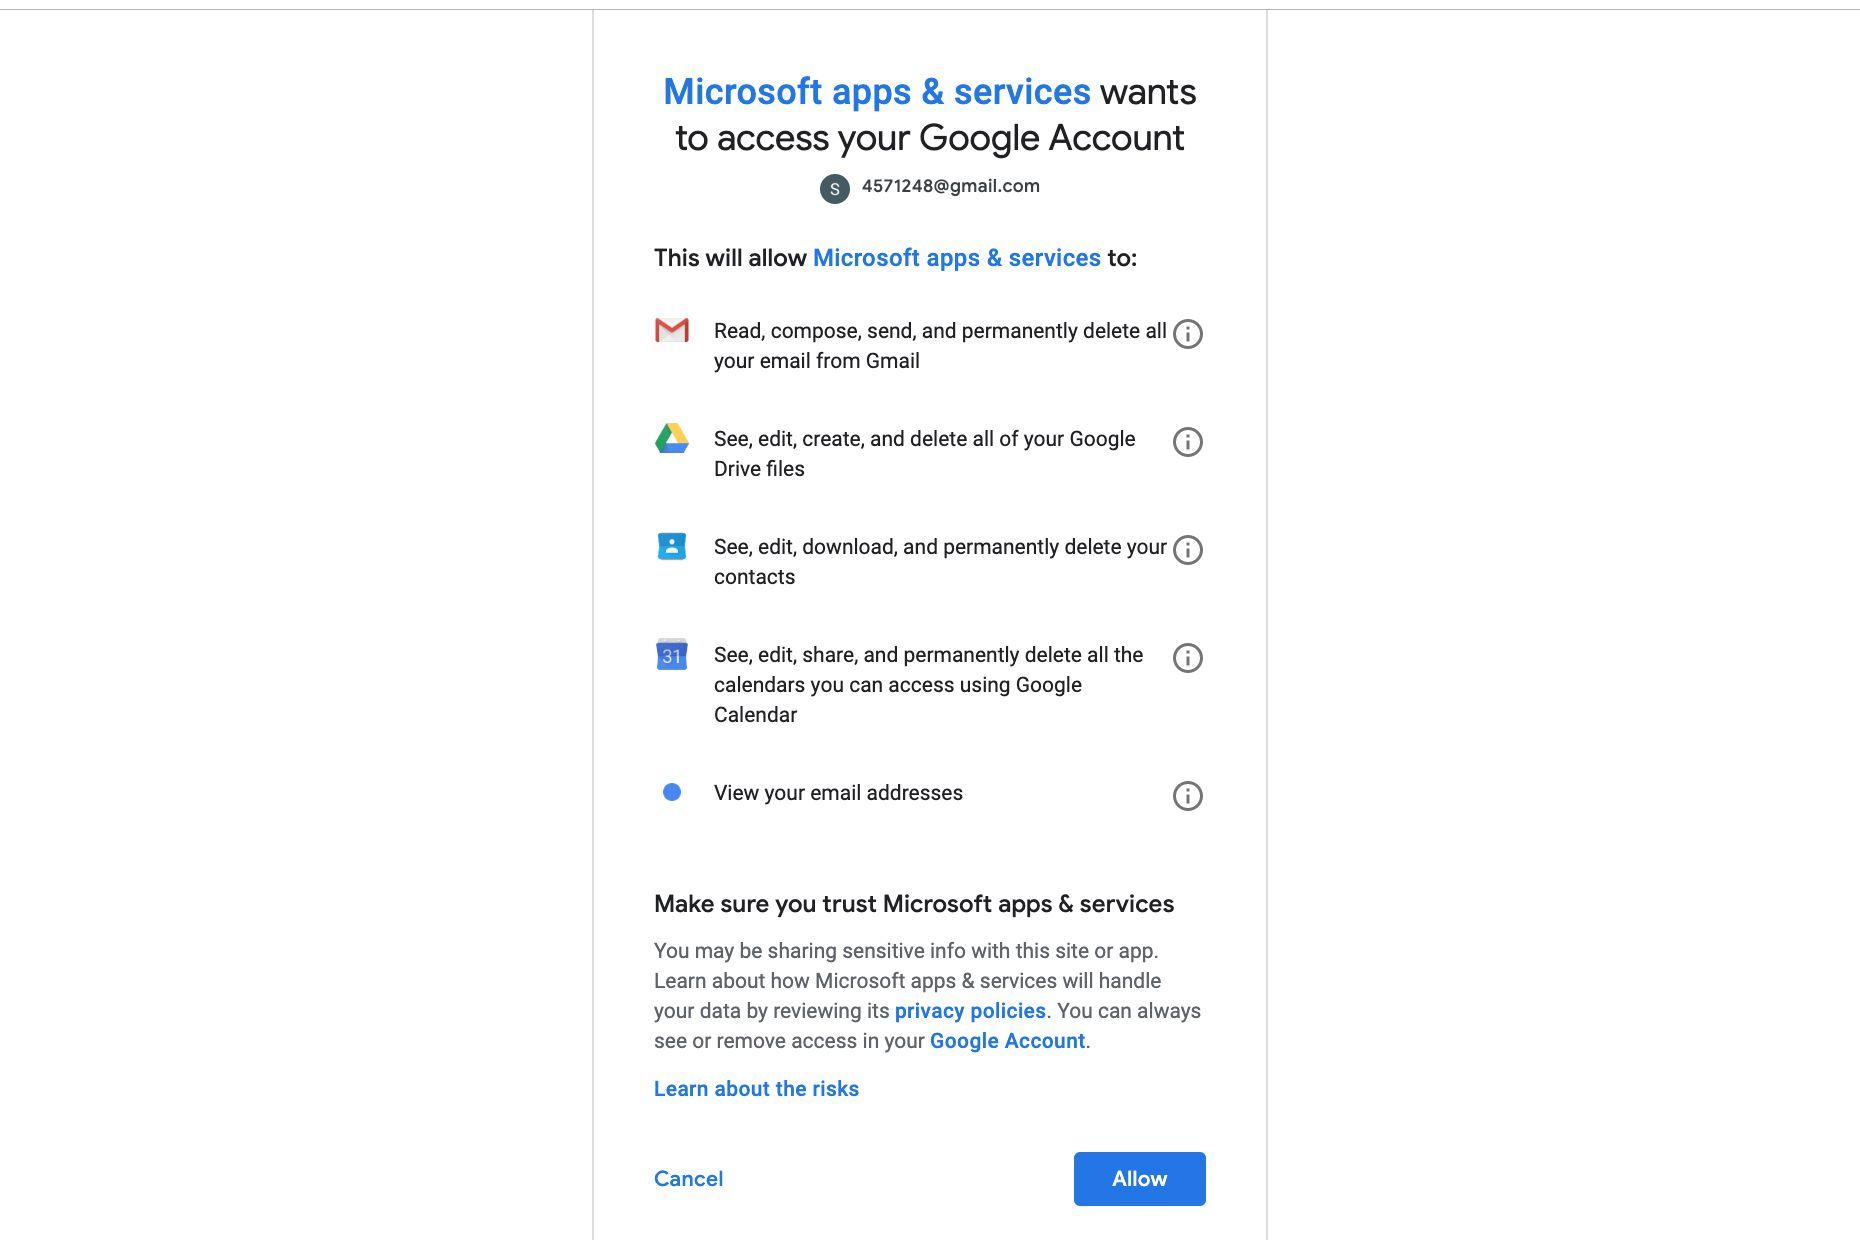 Нажмите Разрешить, чтобы разрешить Microsoft доступ к вашей учетной записи Google